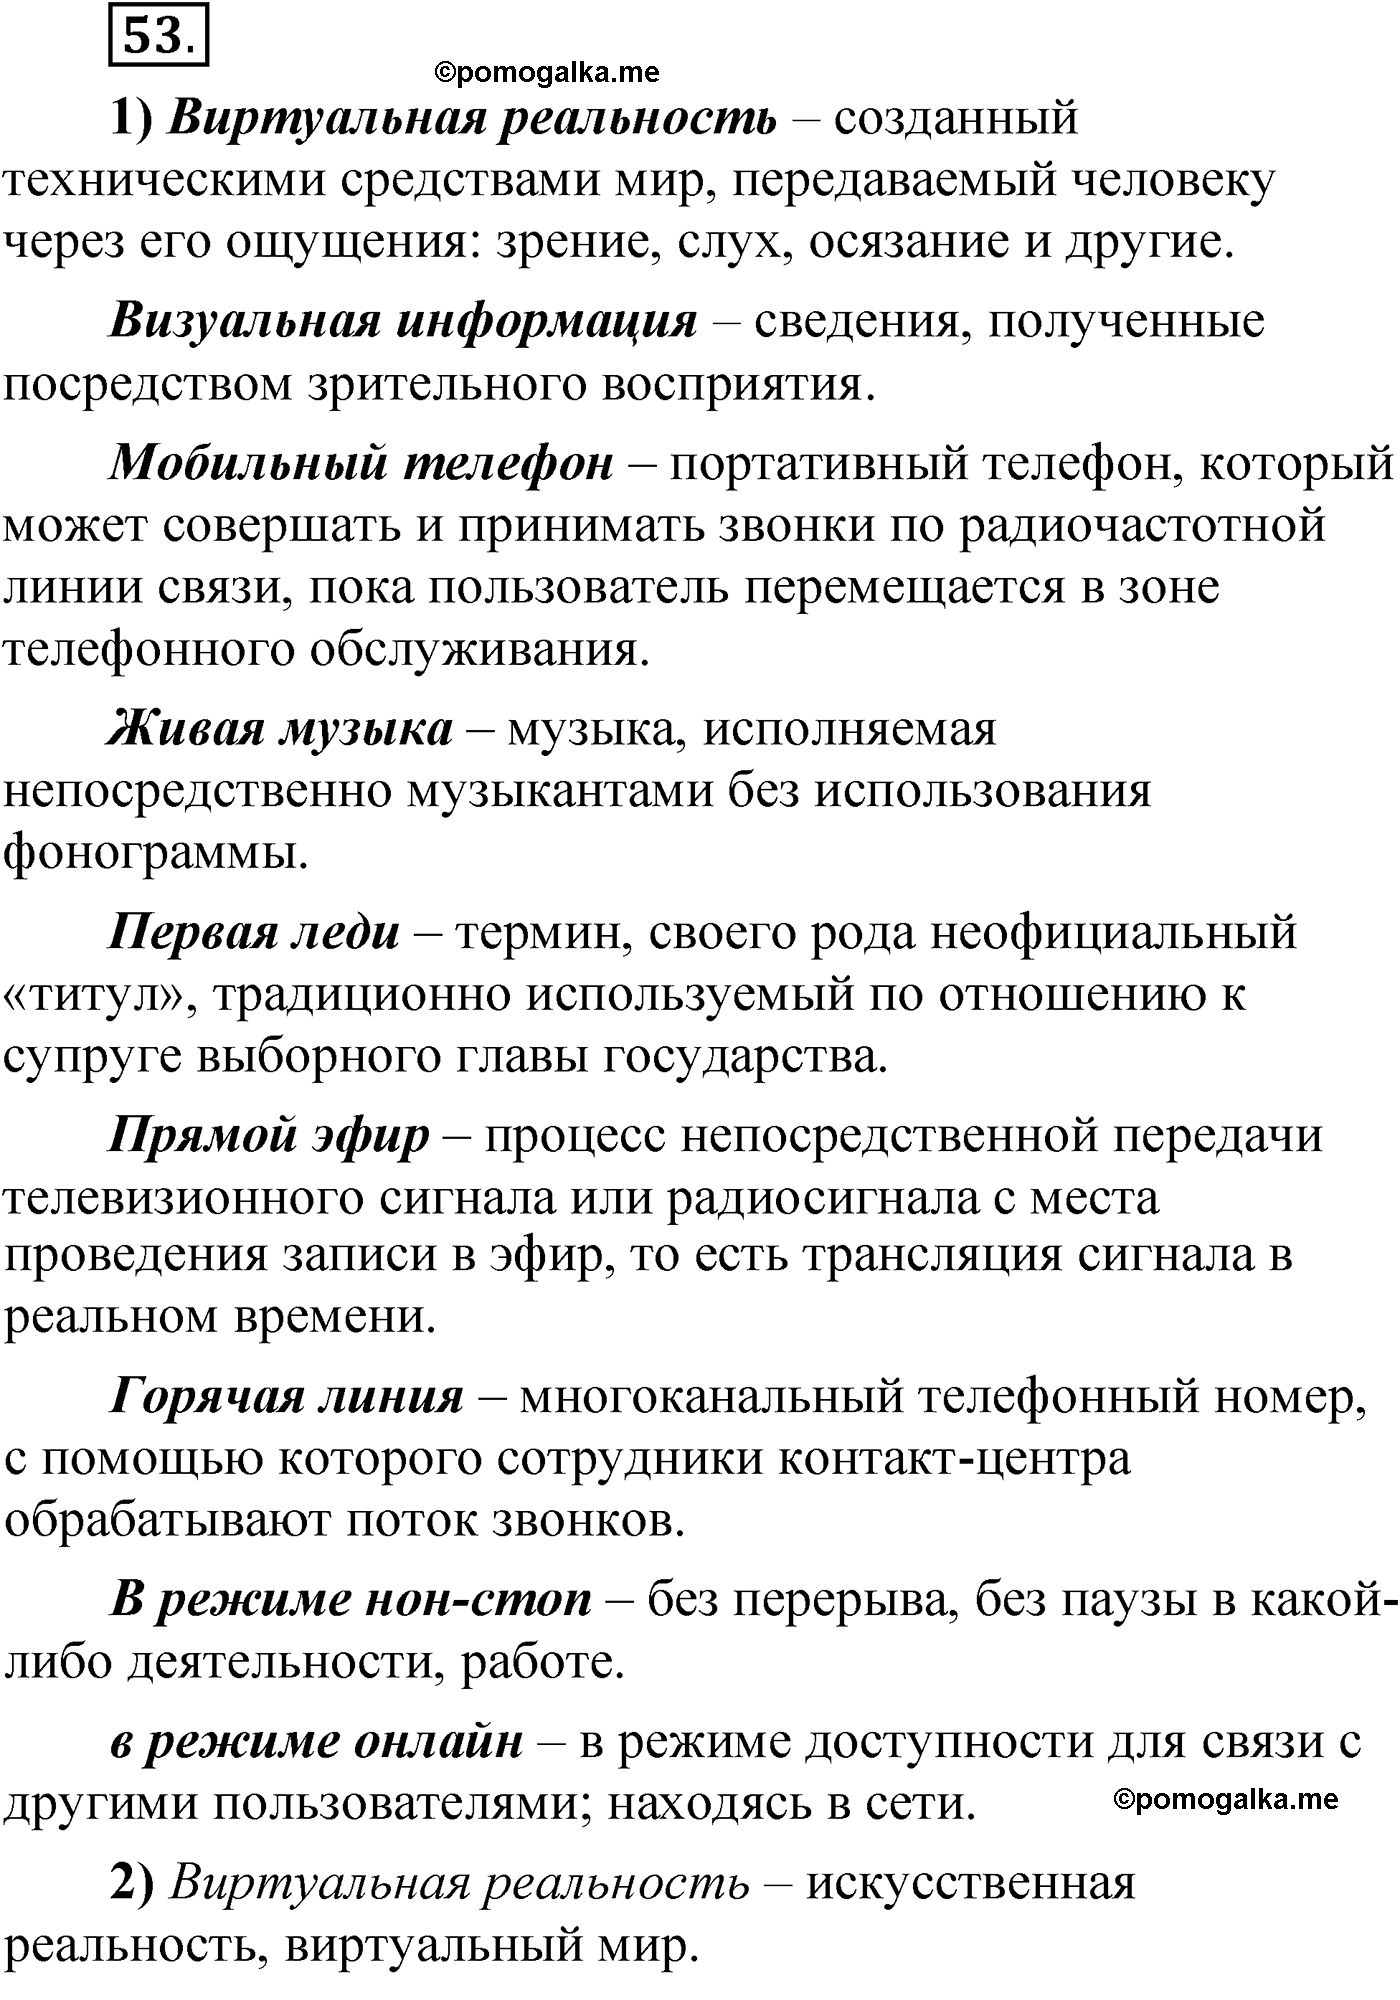 упражнение 53 русский язык 6 класс Александрова 2022